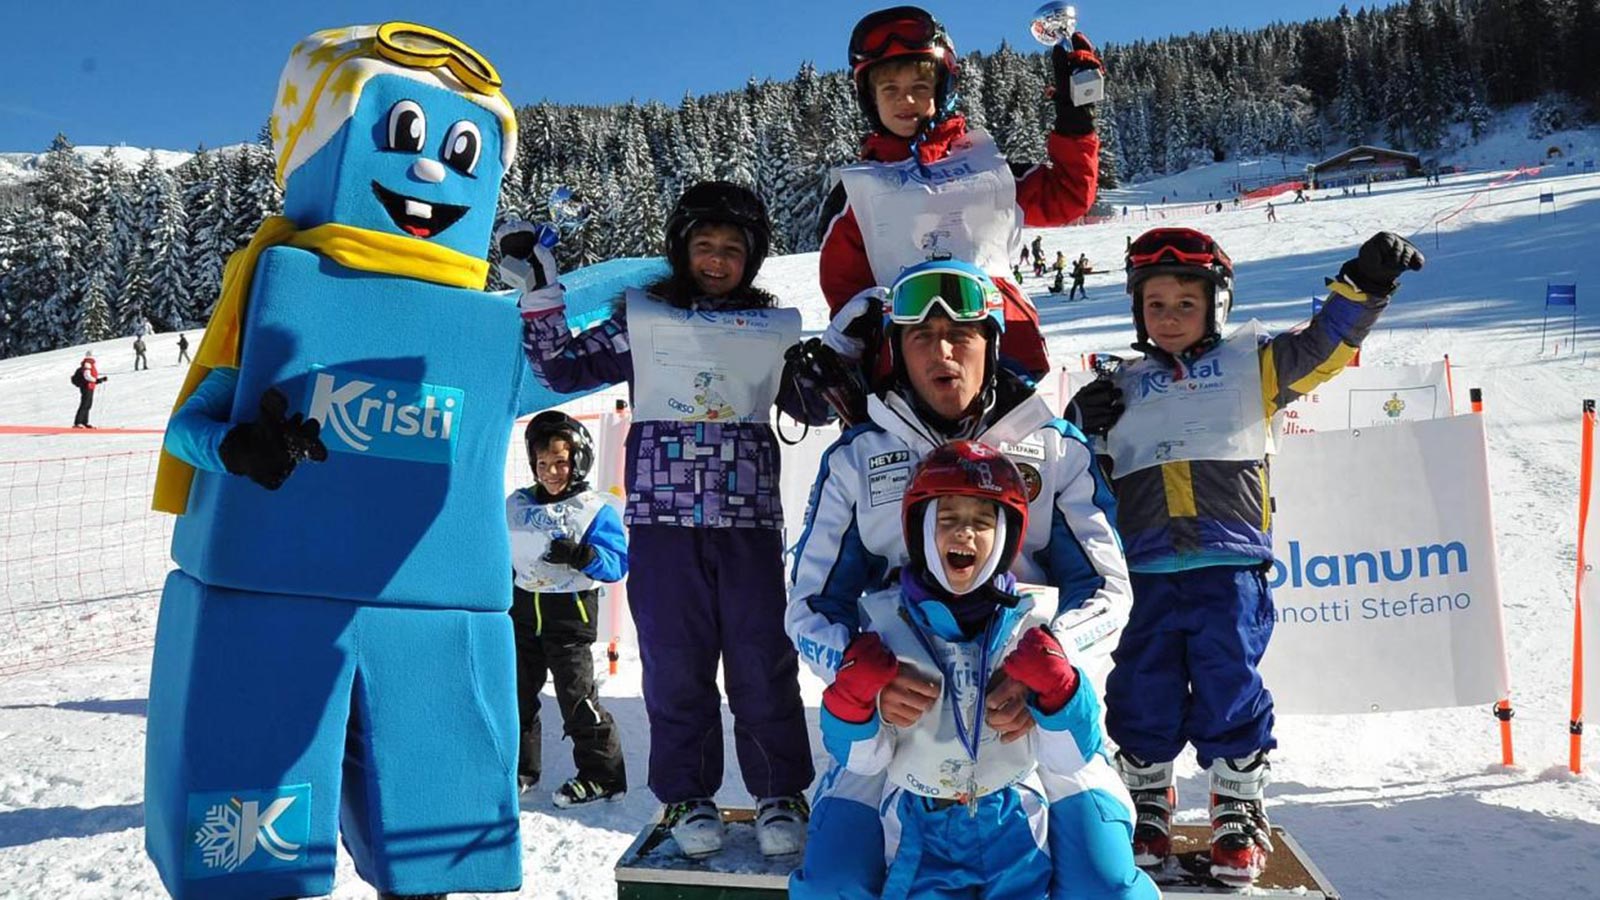 La scuola di sci con la mascotte Kristi vicino al Residence Antares ad Andalo